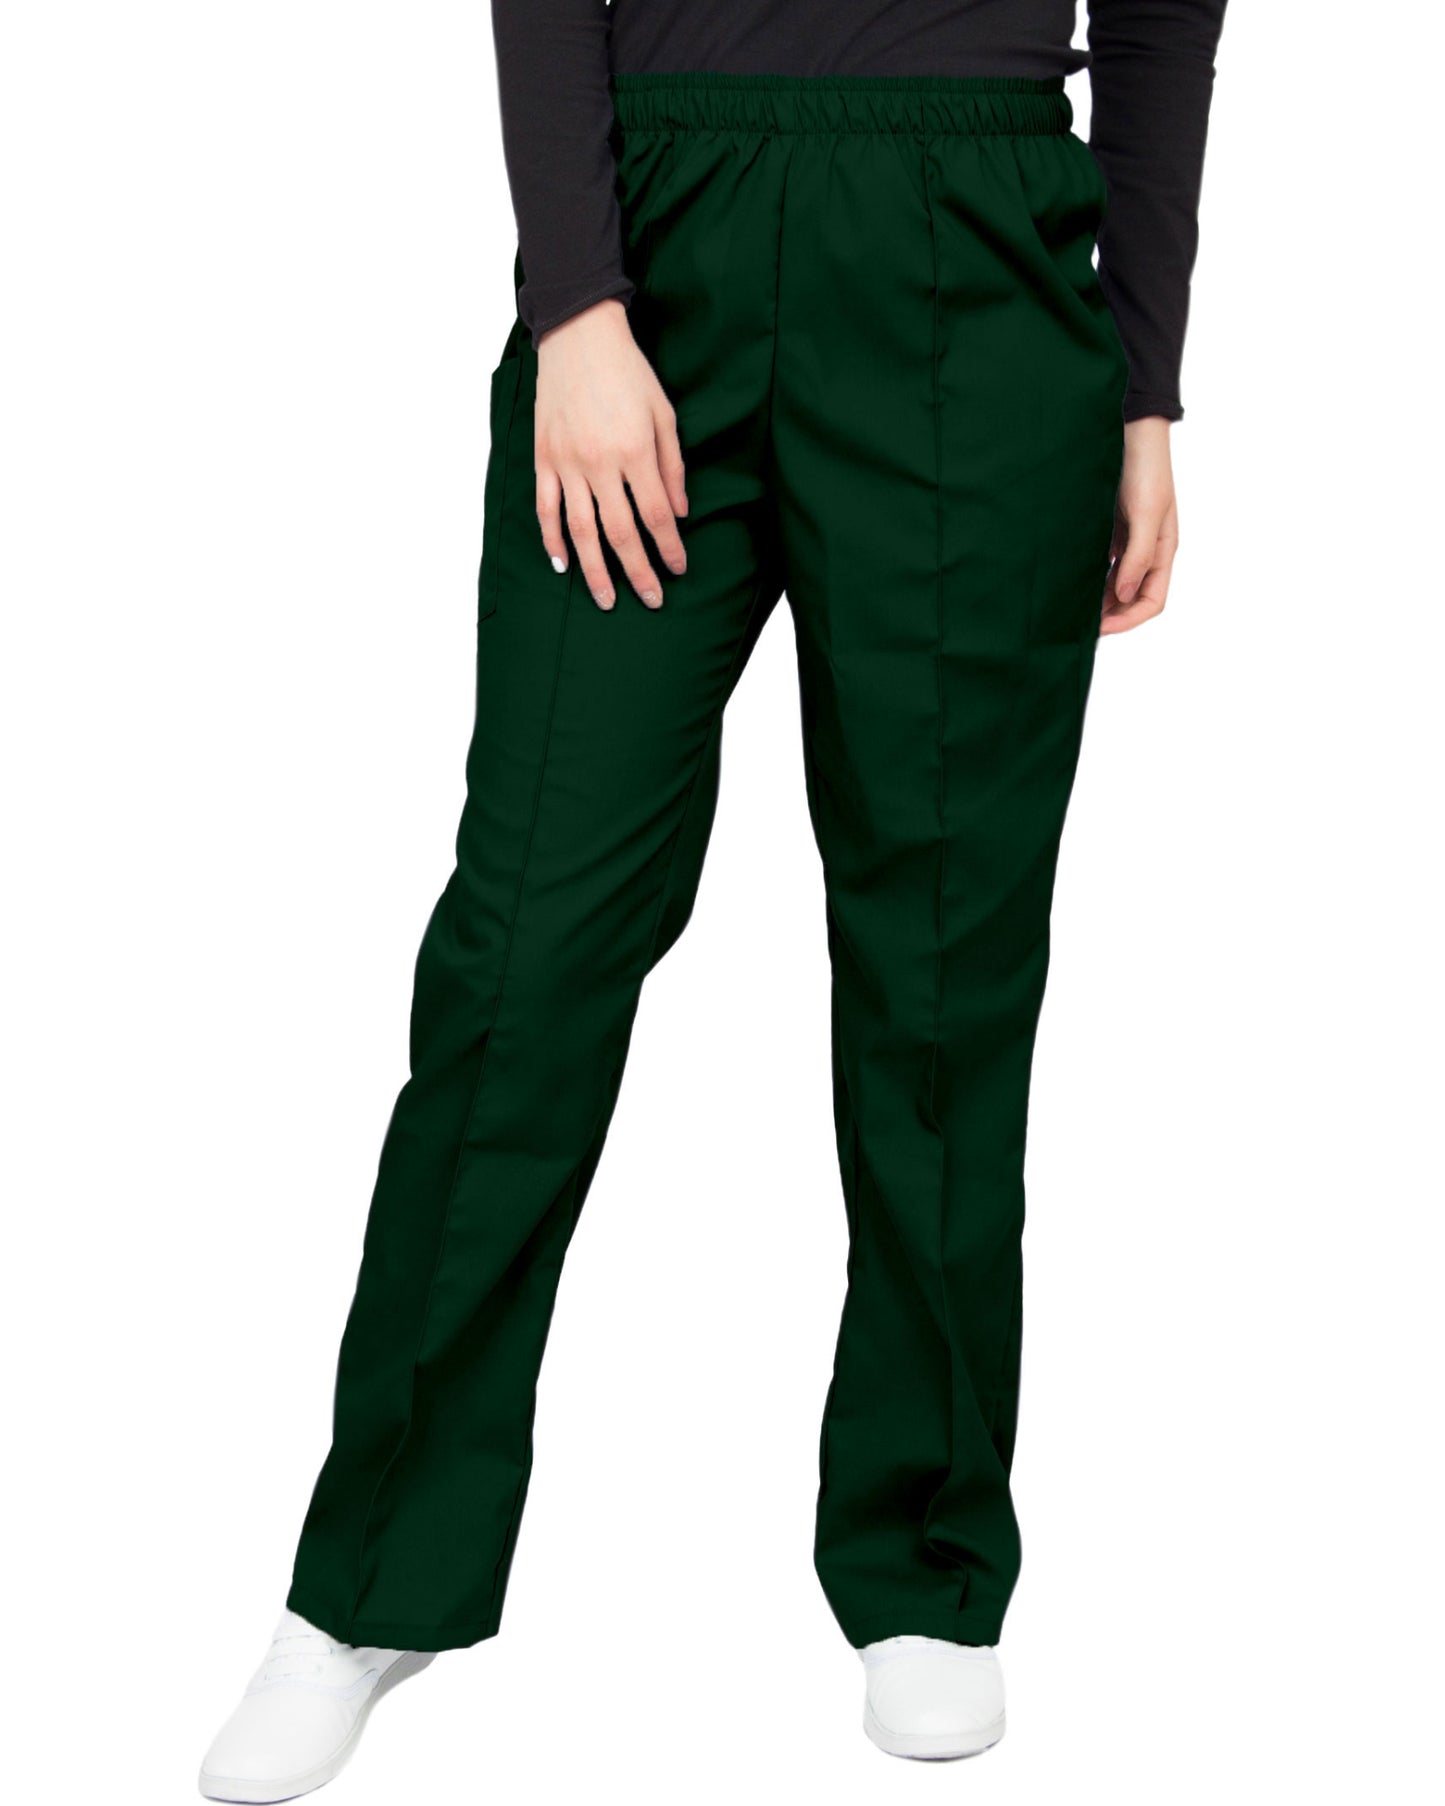 Pantalón clínico verde oscuro de corte recto, con una aforza al frente, una bolsa en el lado derecho con cierre de velcro, y cintura de elástico.